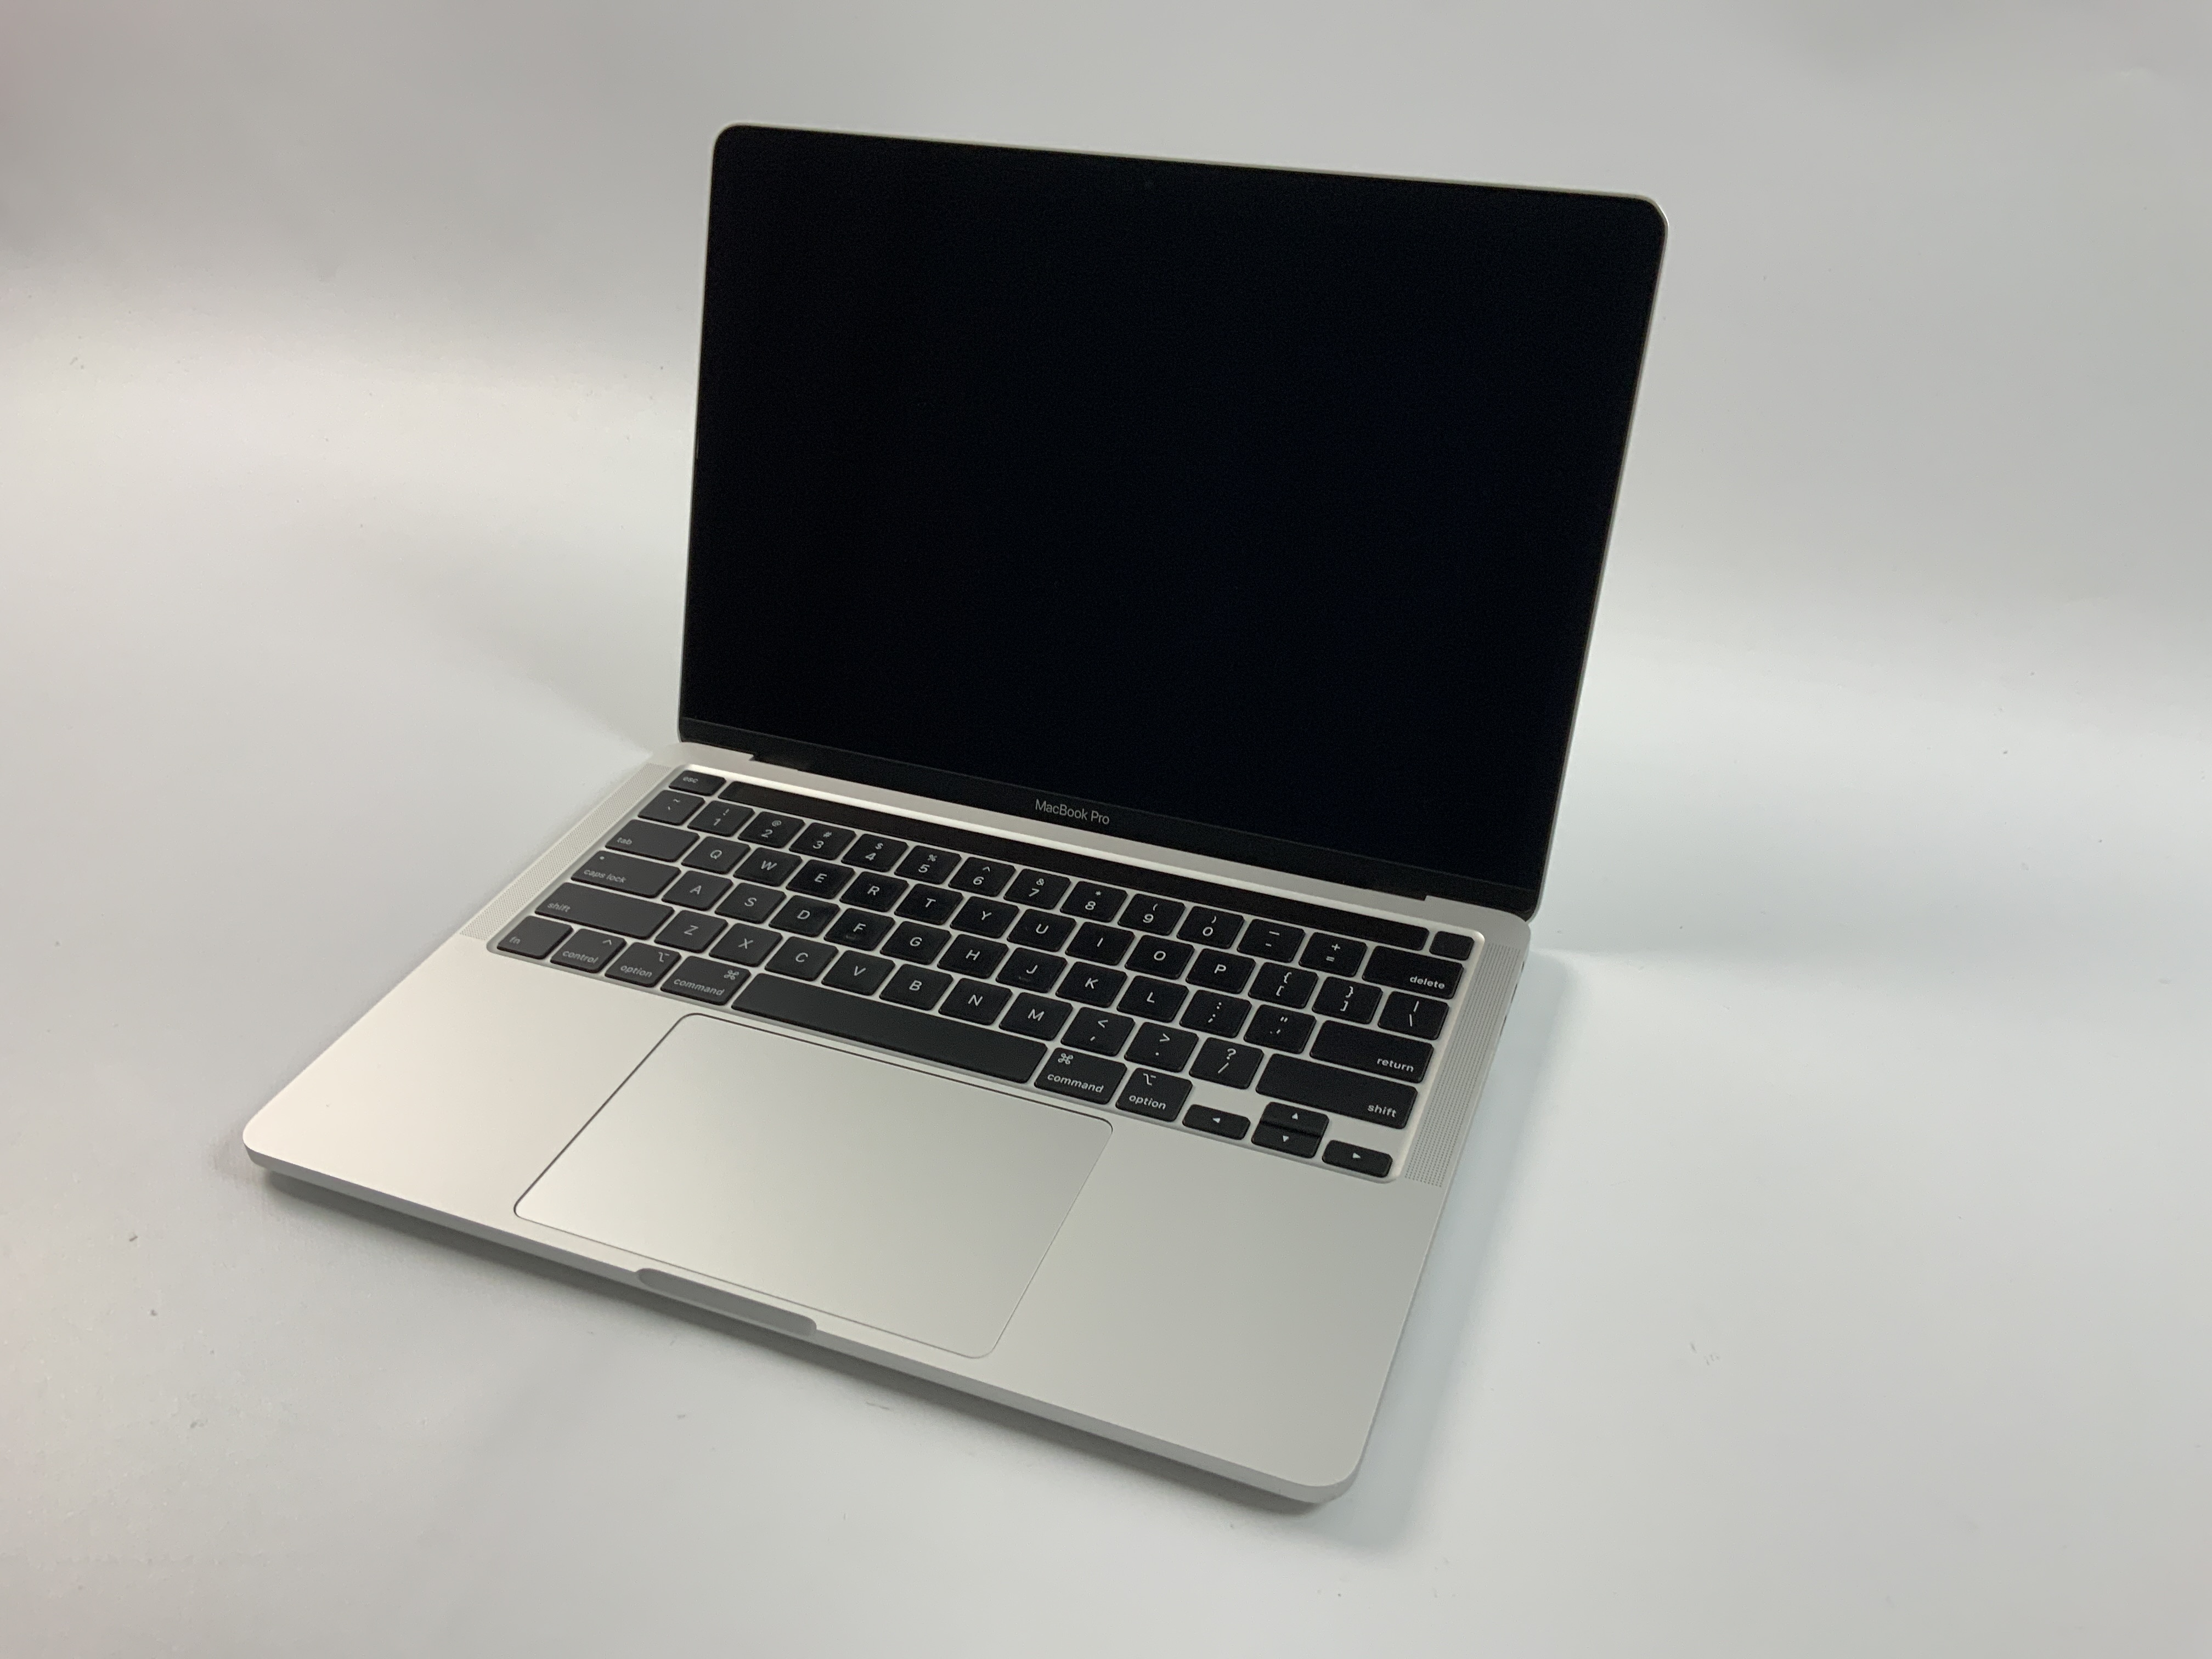 MacBook Pro 13" 4TBT Mid 2020 (Intel Quad-Core i5 2.0 GHz 16 GB RAM 512 GB SSD), Silver, Intel Quad-Core i5 2.0 GHz, 16 GB RAM, 512 GB SSD, bild 1